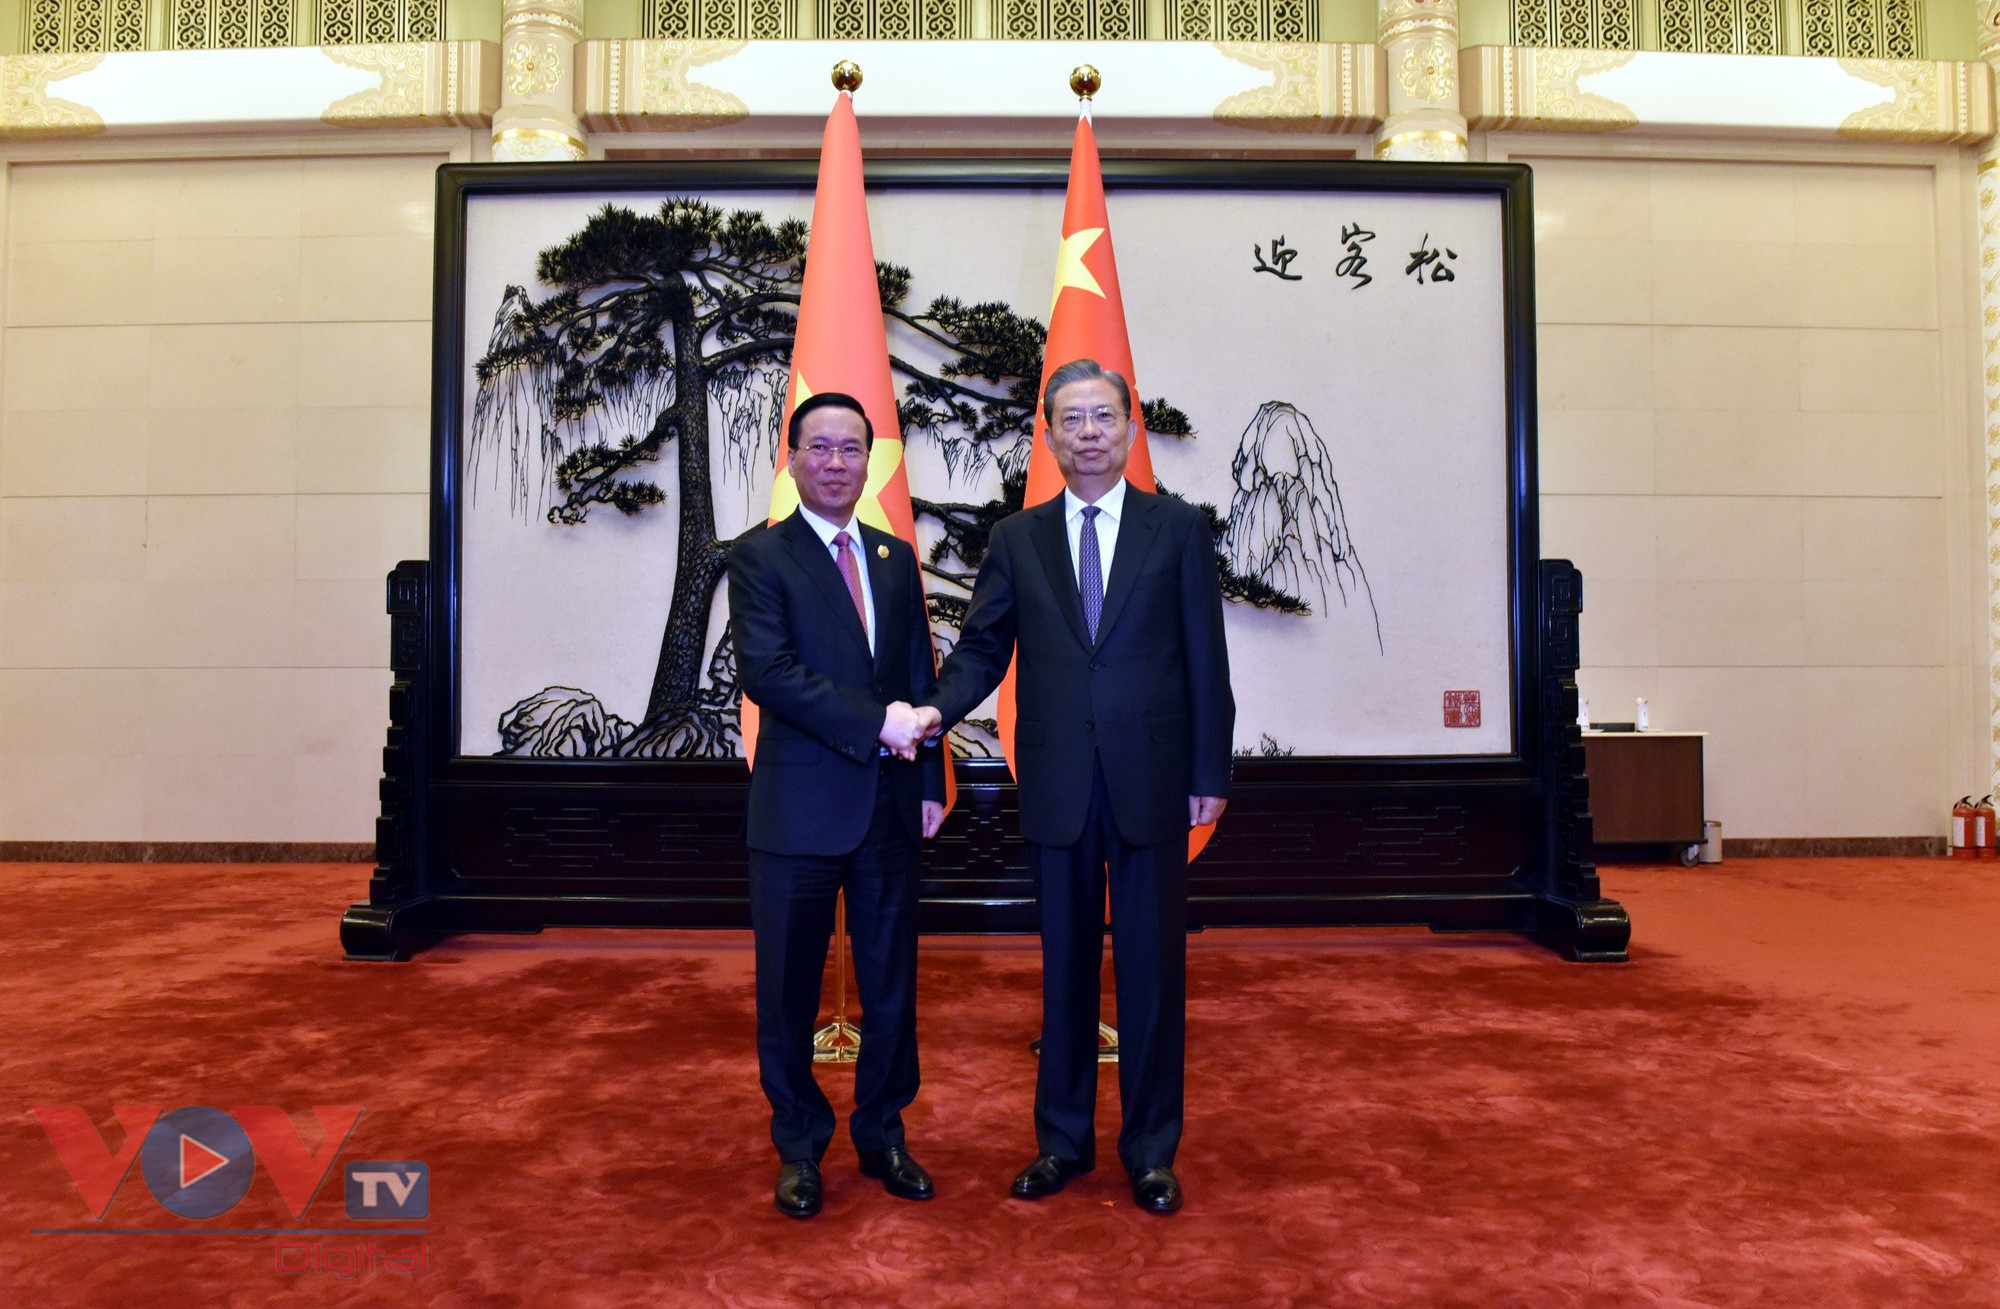 Chủ tịch nước hội kiến Ủy viên trưởng Nhân đại toàn quốc Trung Quốc - Ảnh 1.